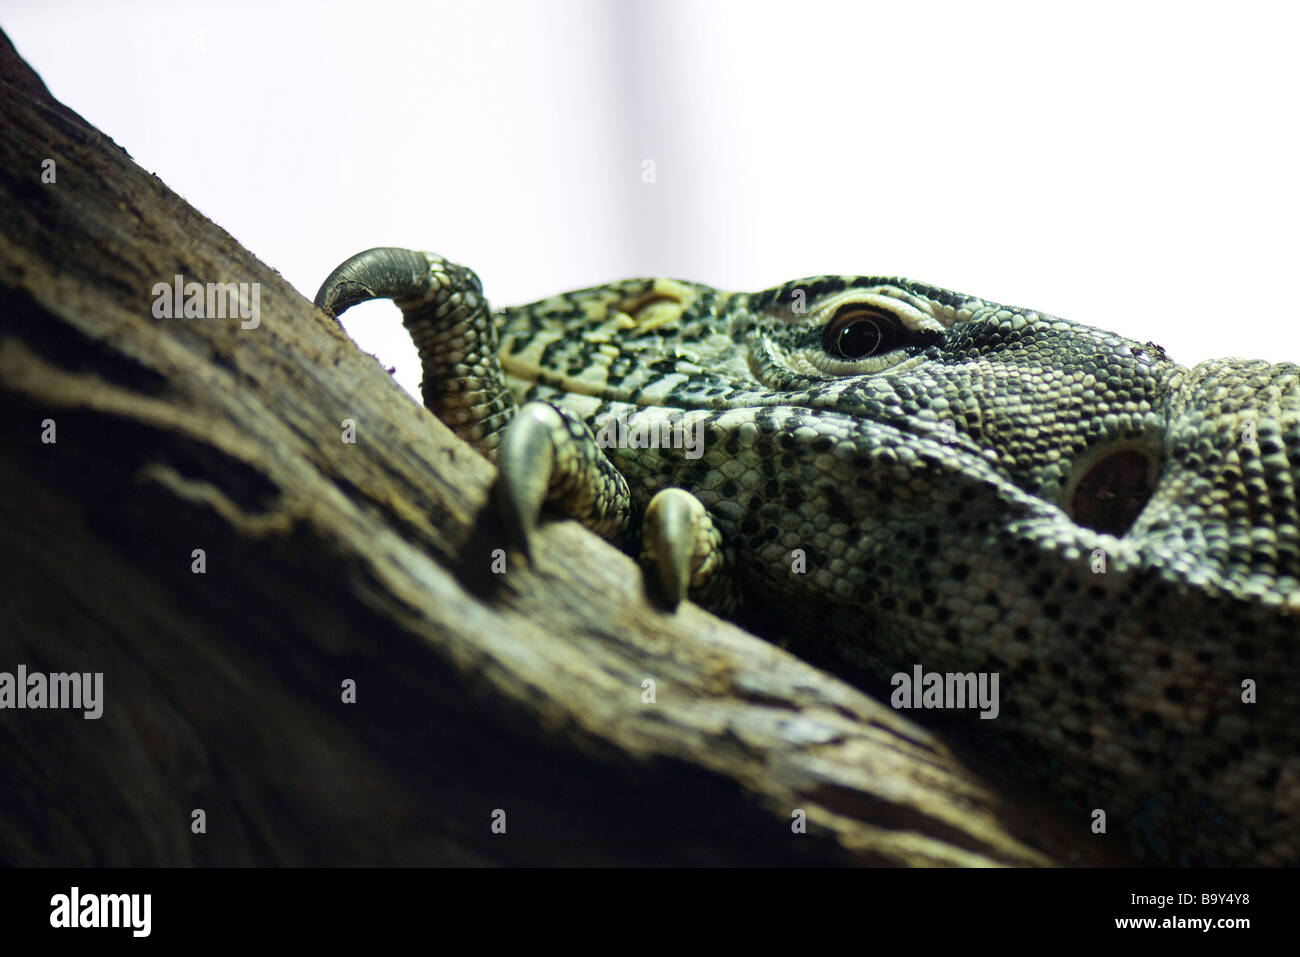 Nile Monitor (Varanus niloticus) Stock Photo